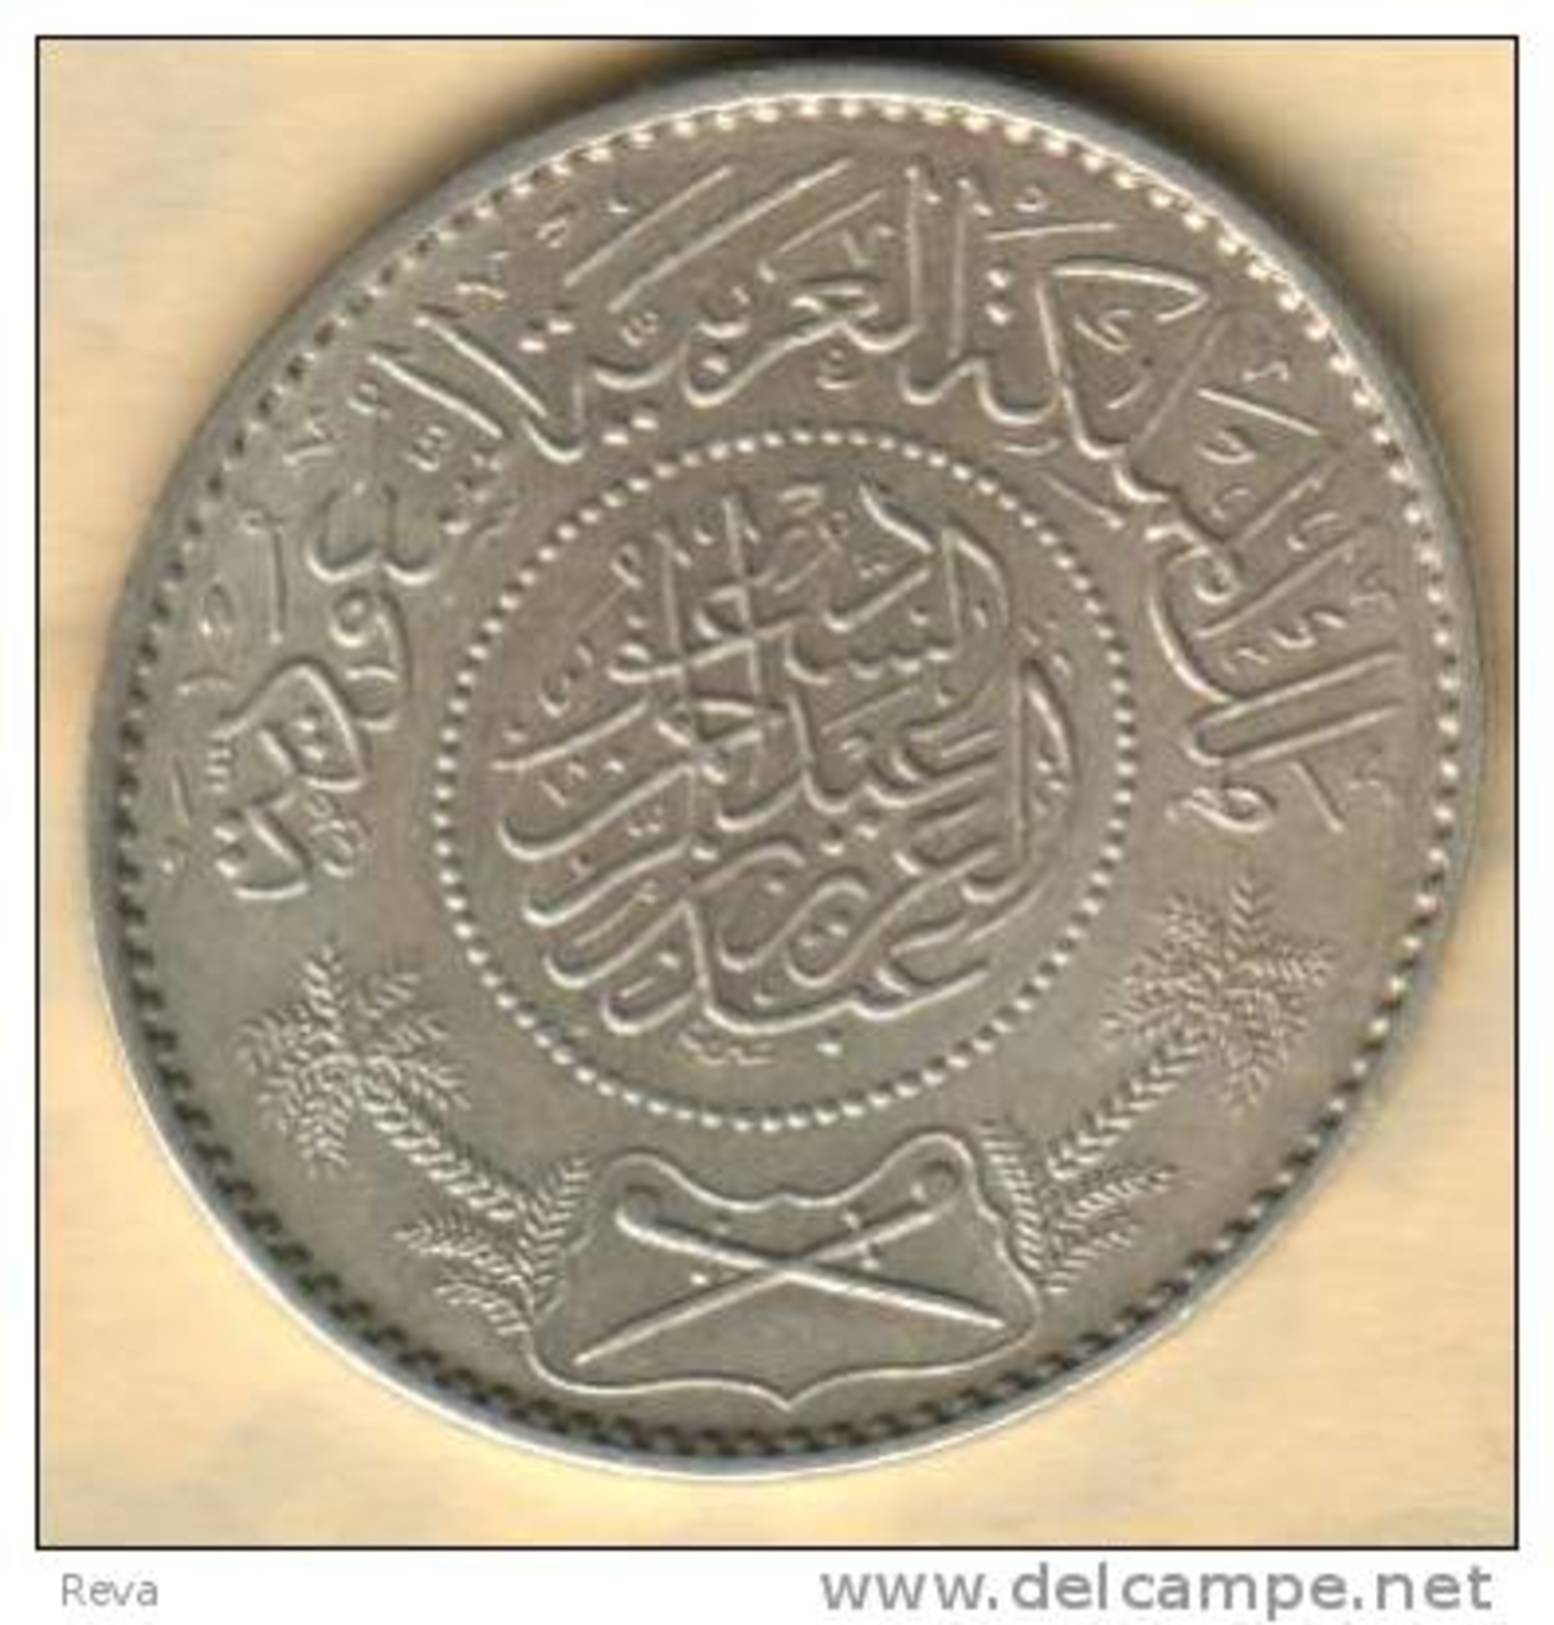 SAUDI ARABIA 1 RIYAL ARABIC WRITING FRONT EMBLEM BACK 1354-1935 VF AG SILVER KM18 READ DESCRIPTION CAREFULLY !!! - Saudi Arabia